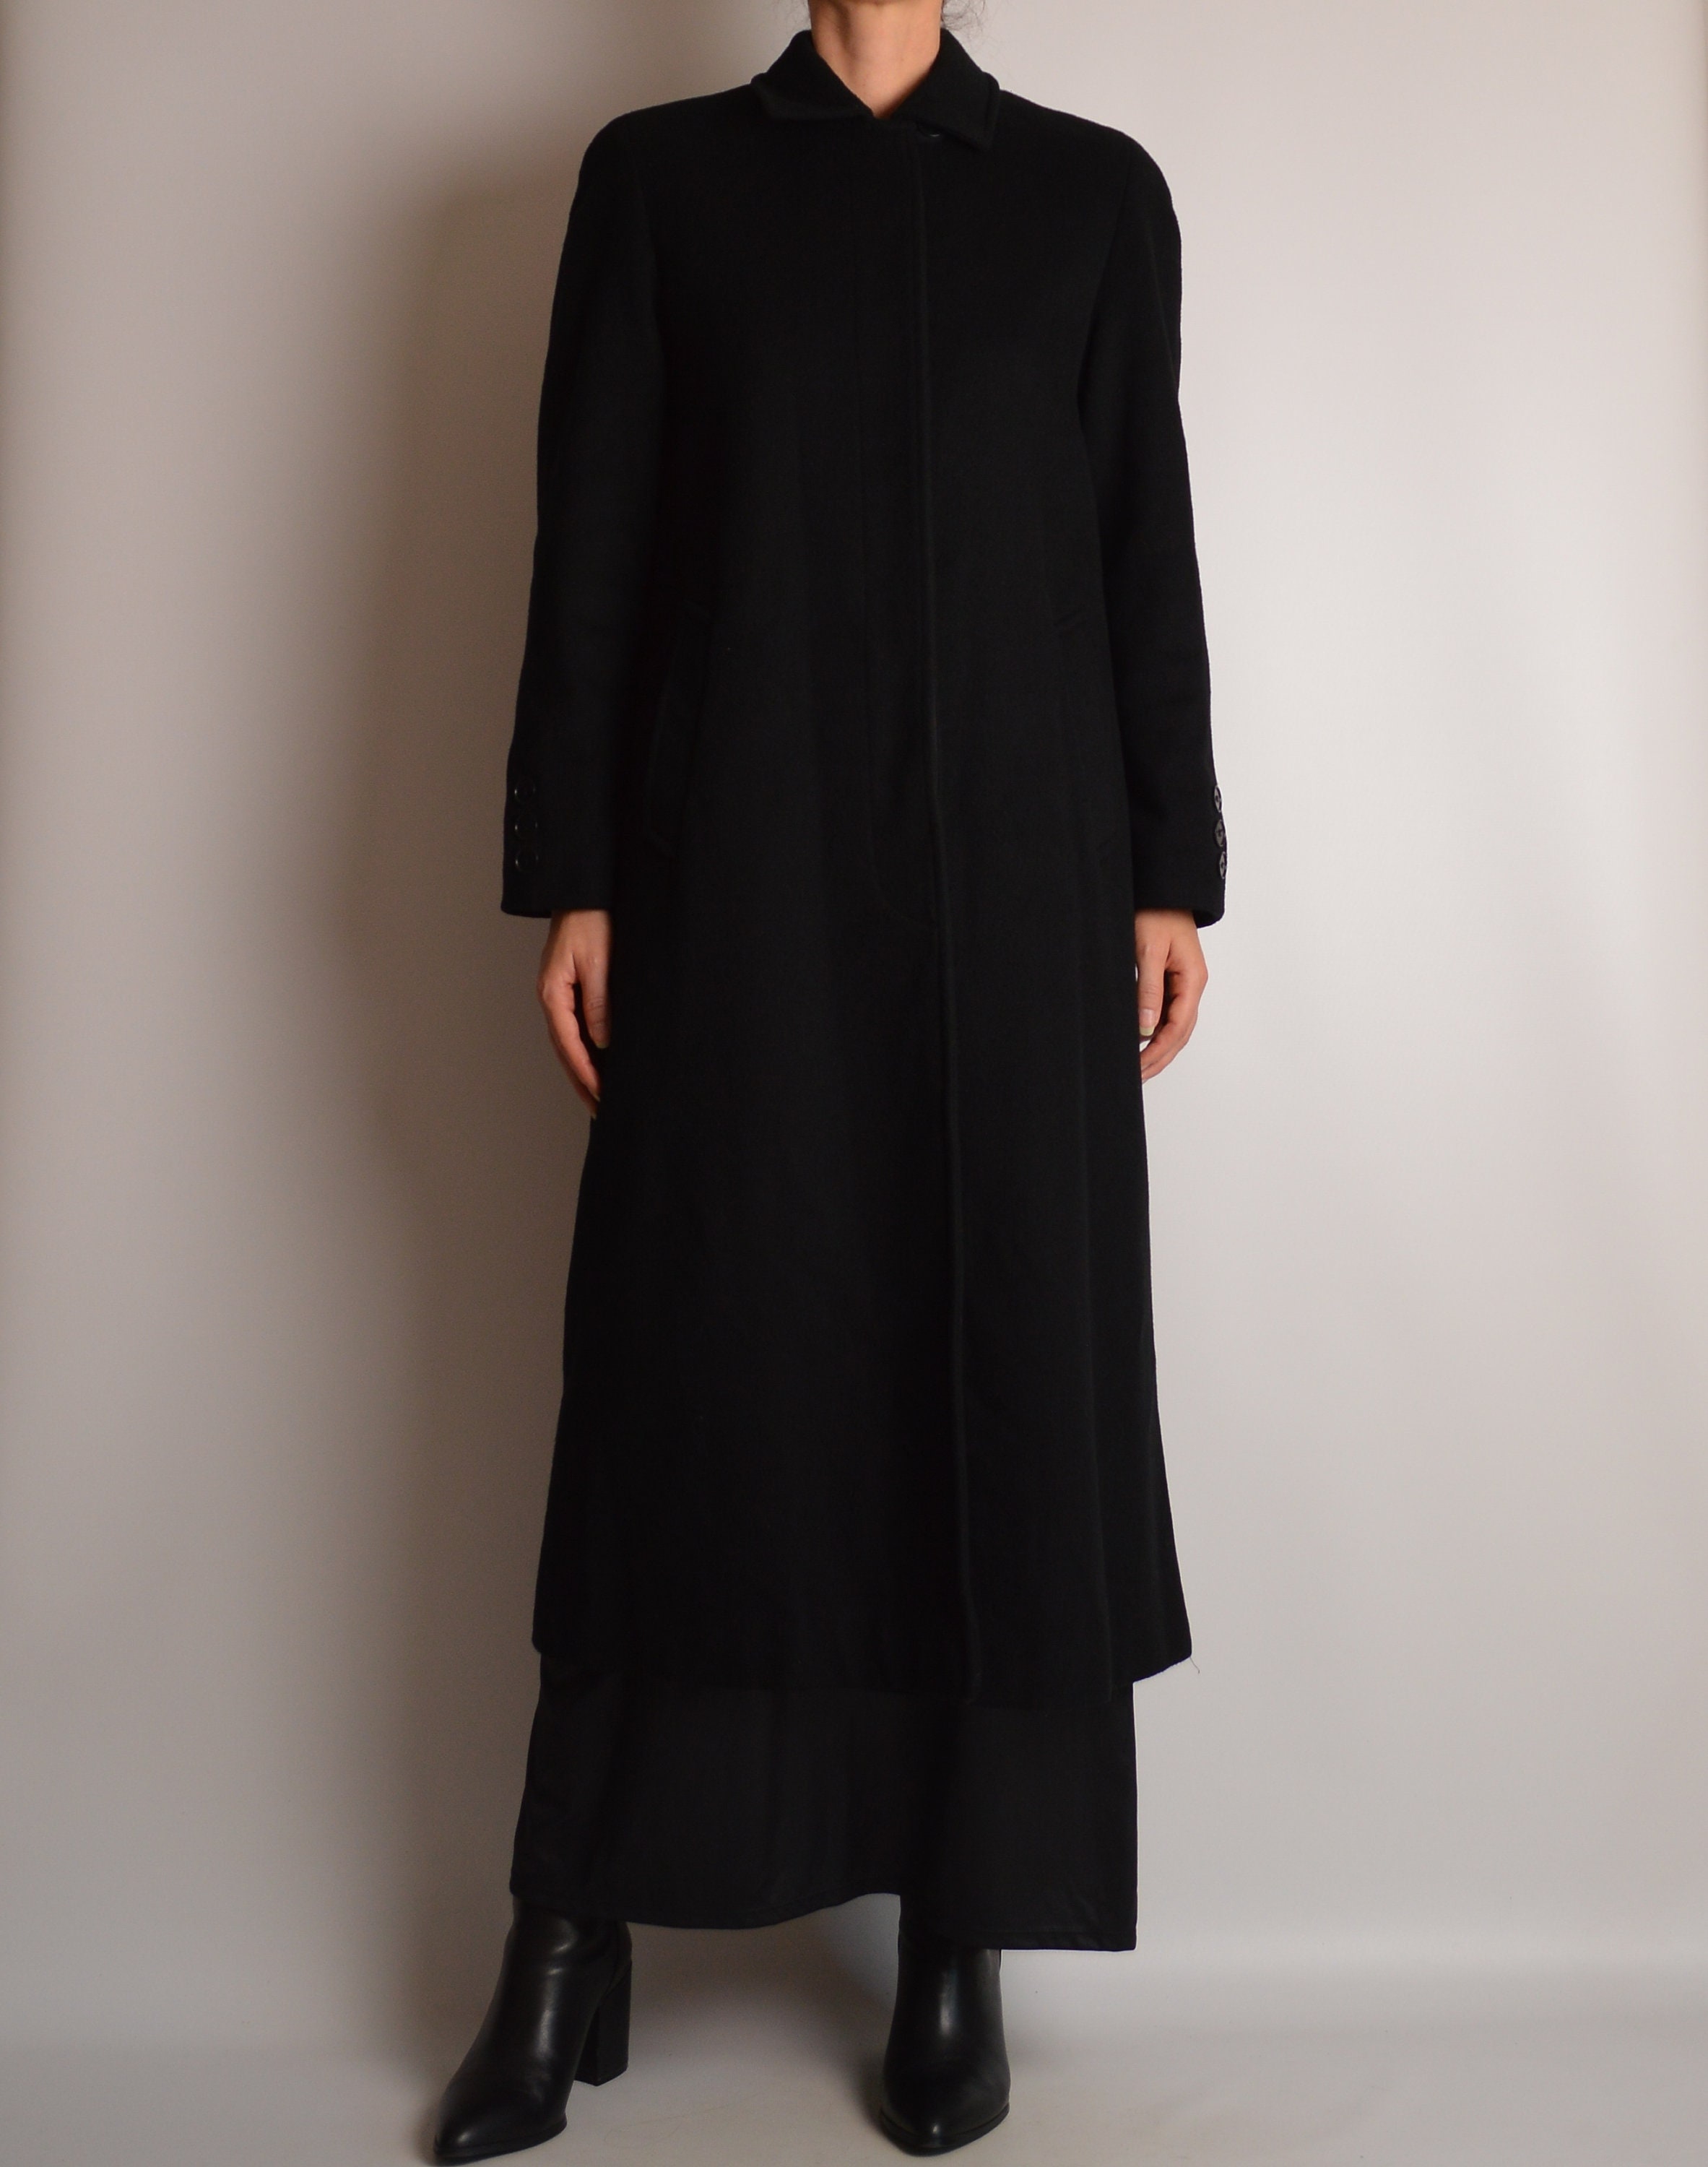 Vintage Black Wool Long Coat (S-M)